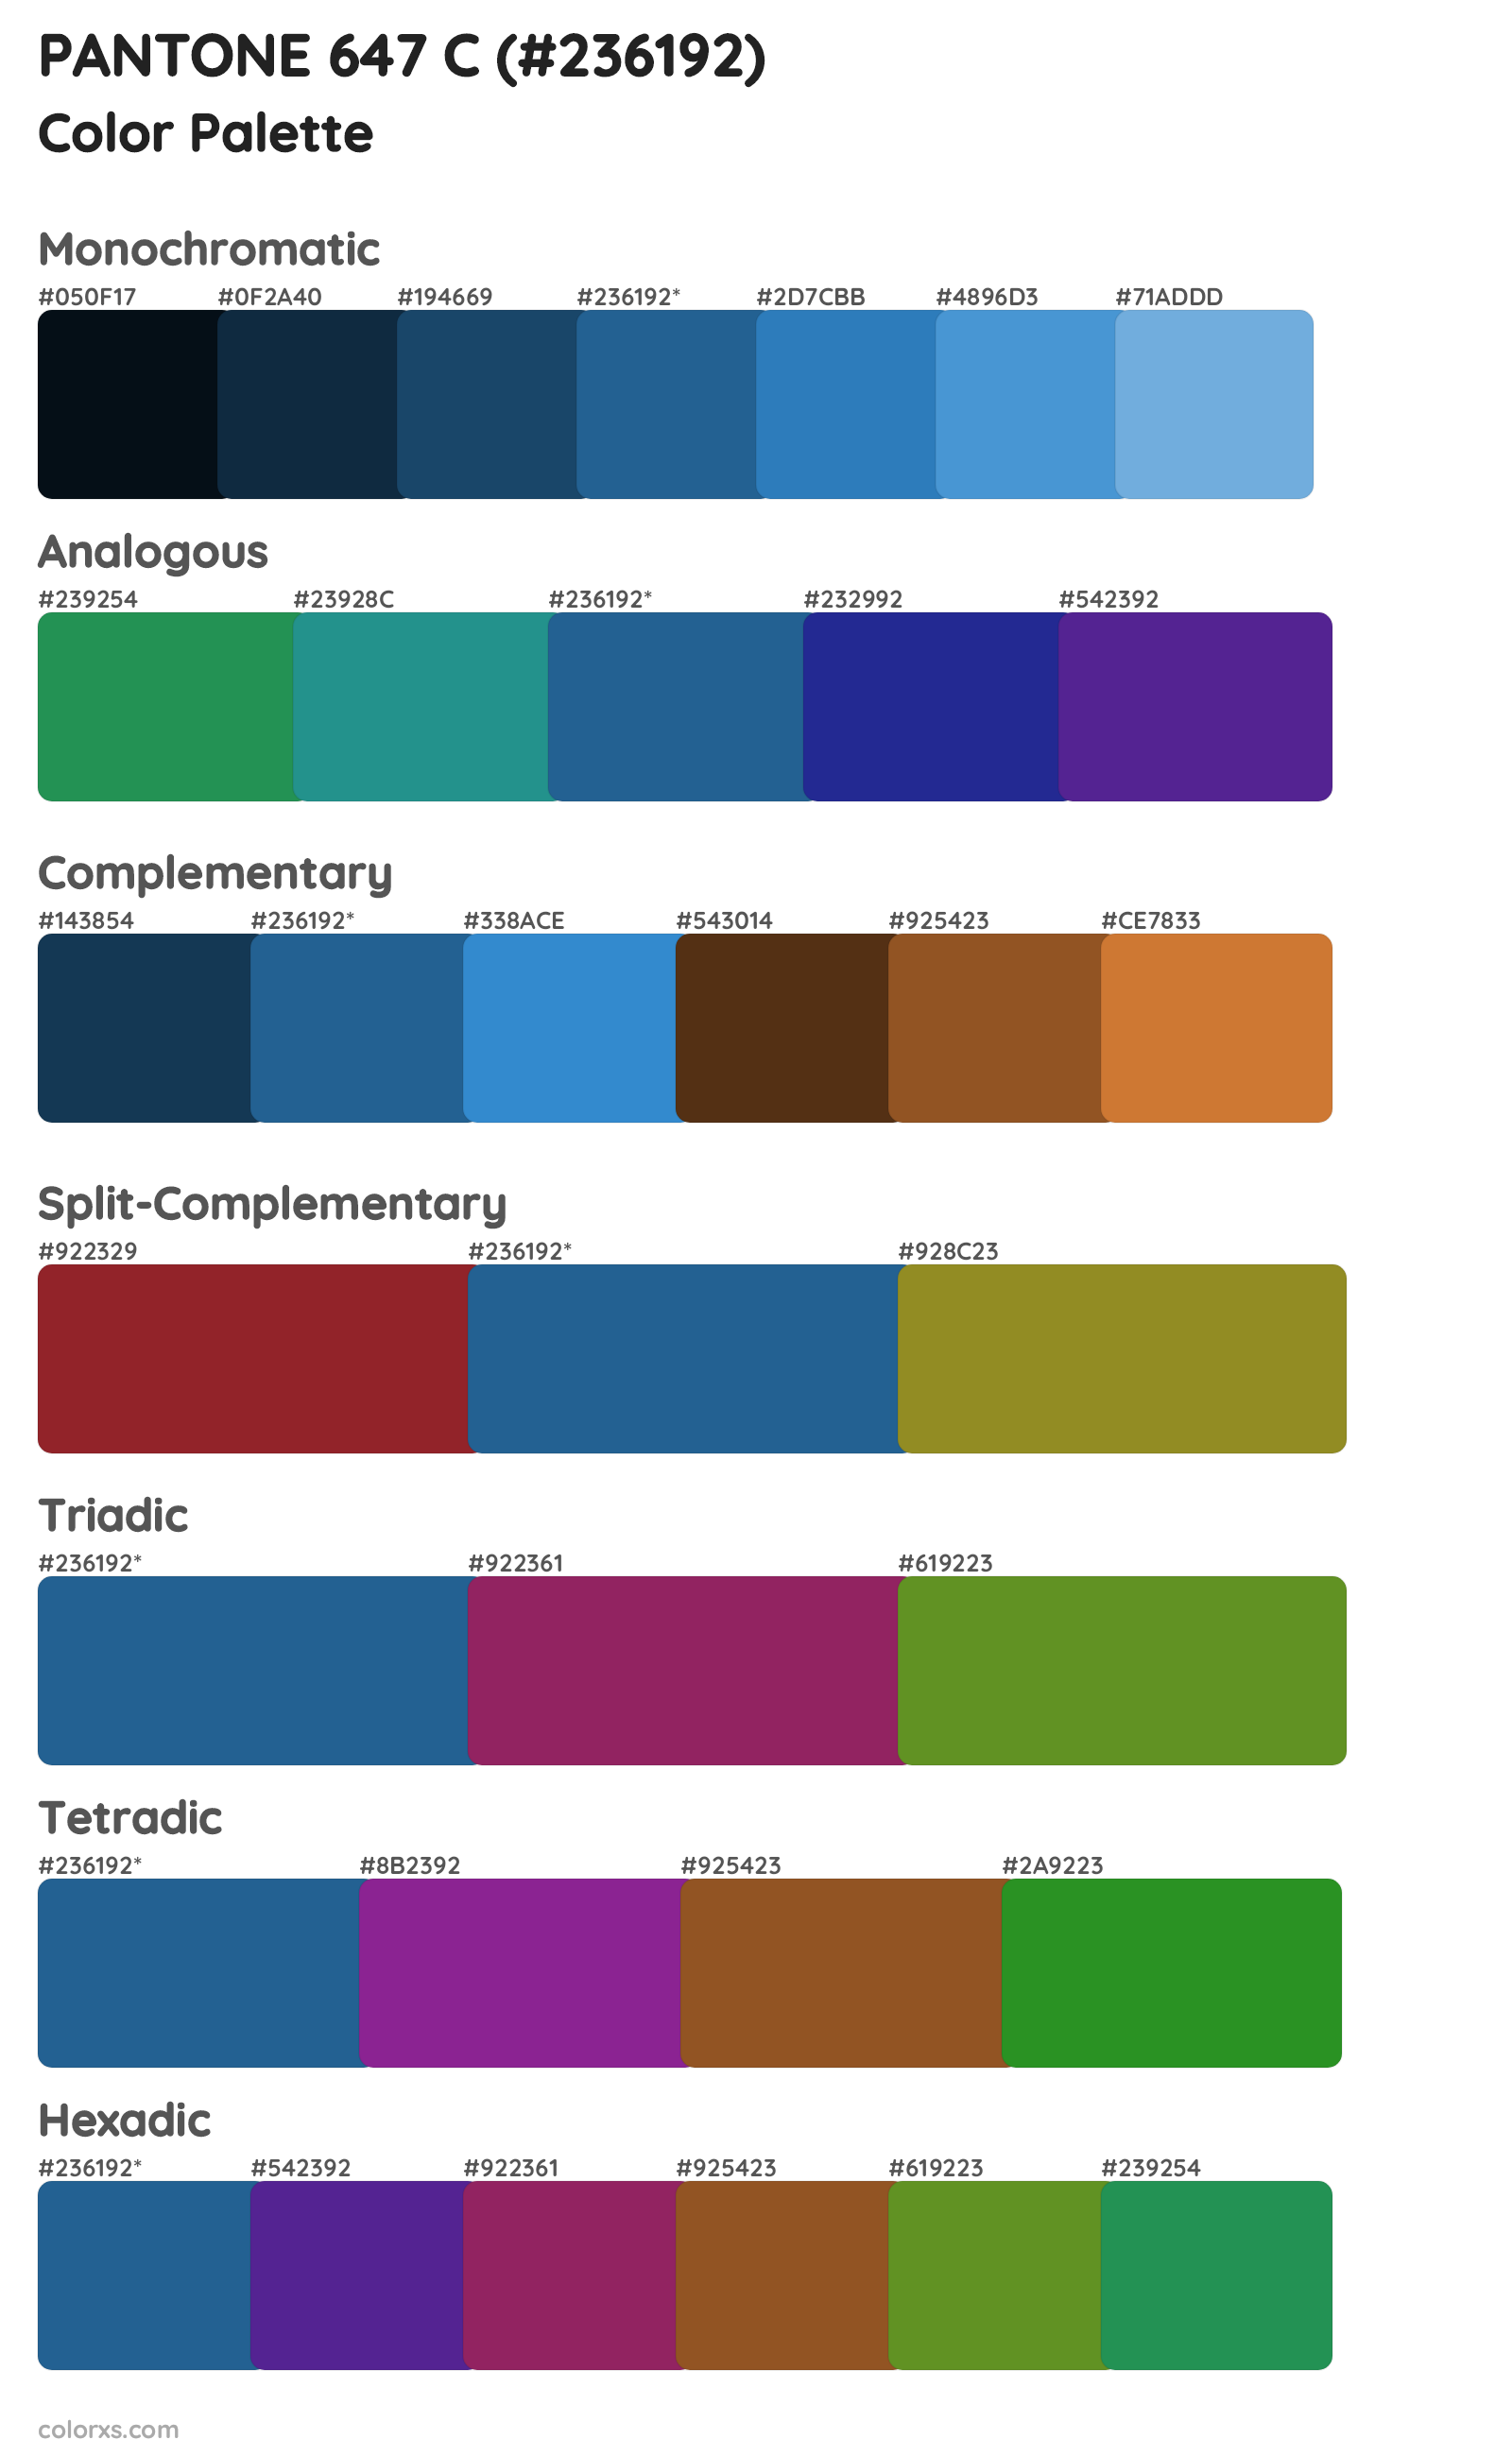 PANTONE 647 C Color Scheme Palettes